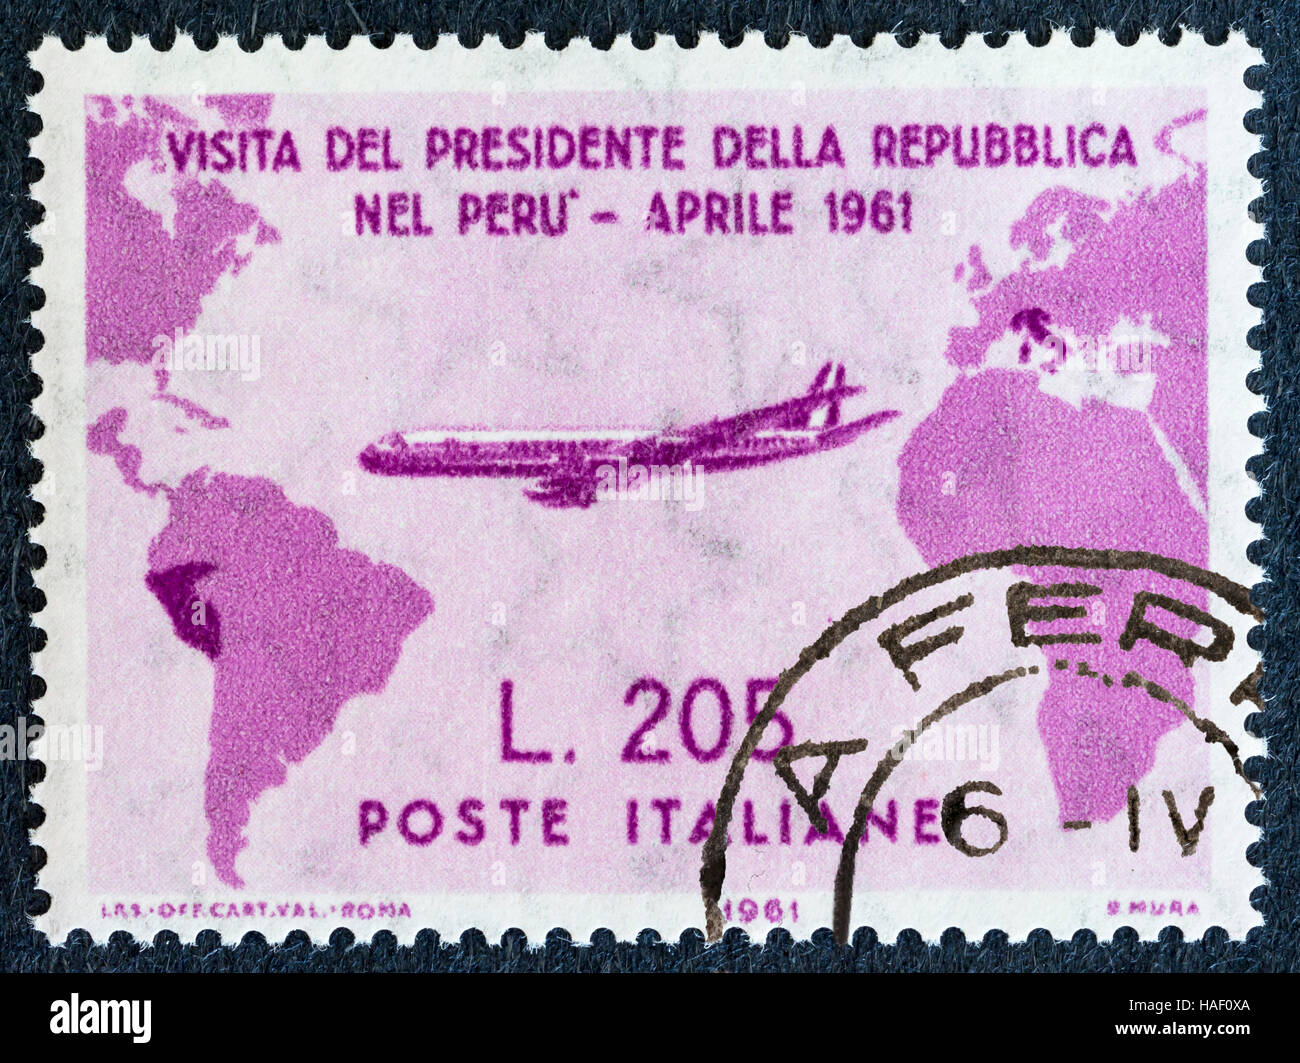 Biella, Italia - 26 novembre 2016. raro timbro postale "gronchi rosa", raffigurante la visita del presidente gronchi in Perù nel mese di aprile 1961 Foto Stock